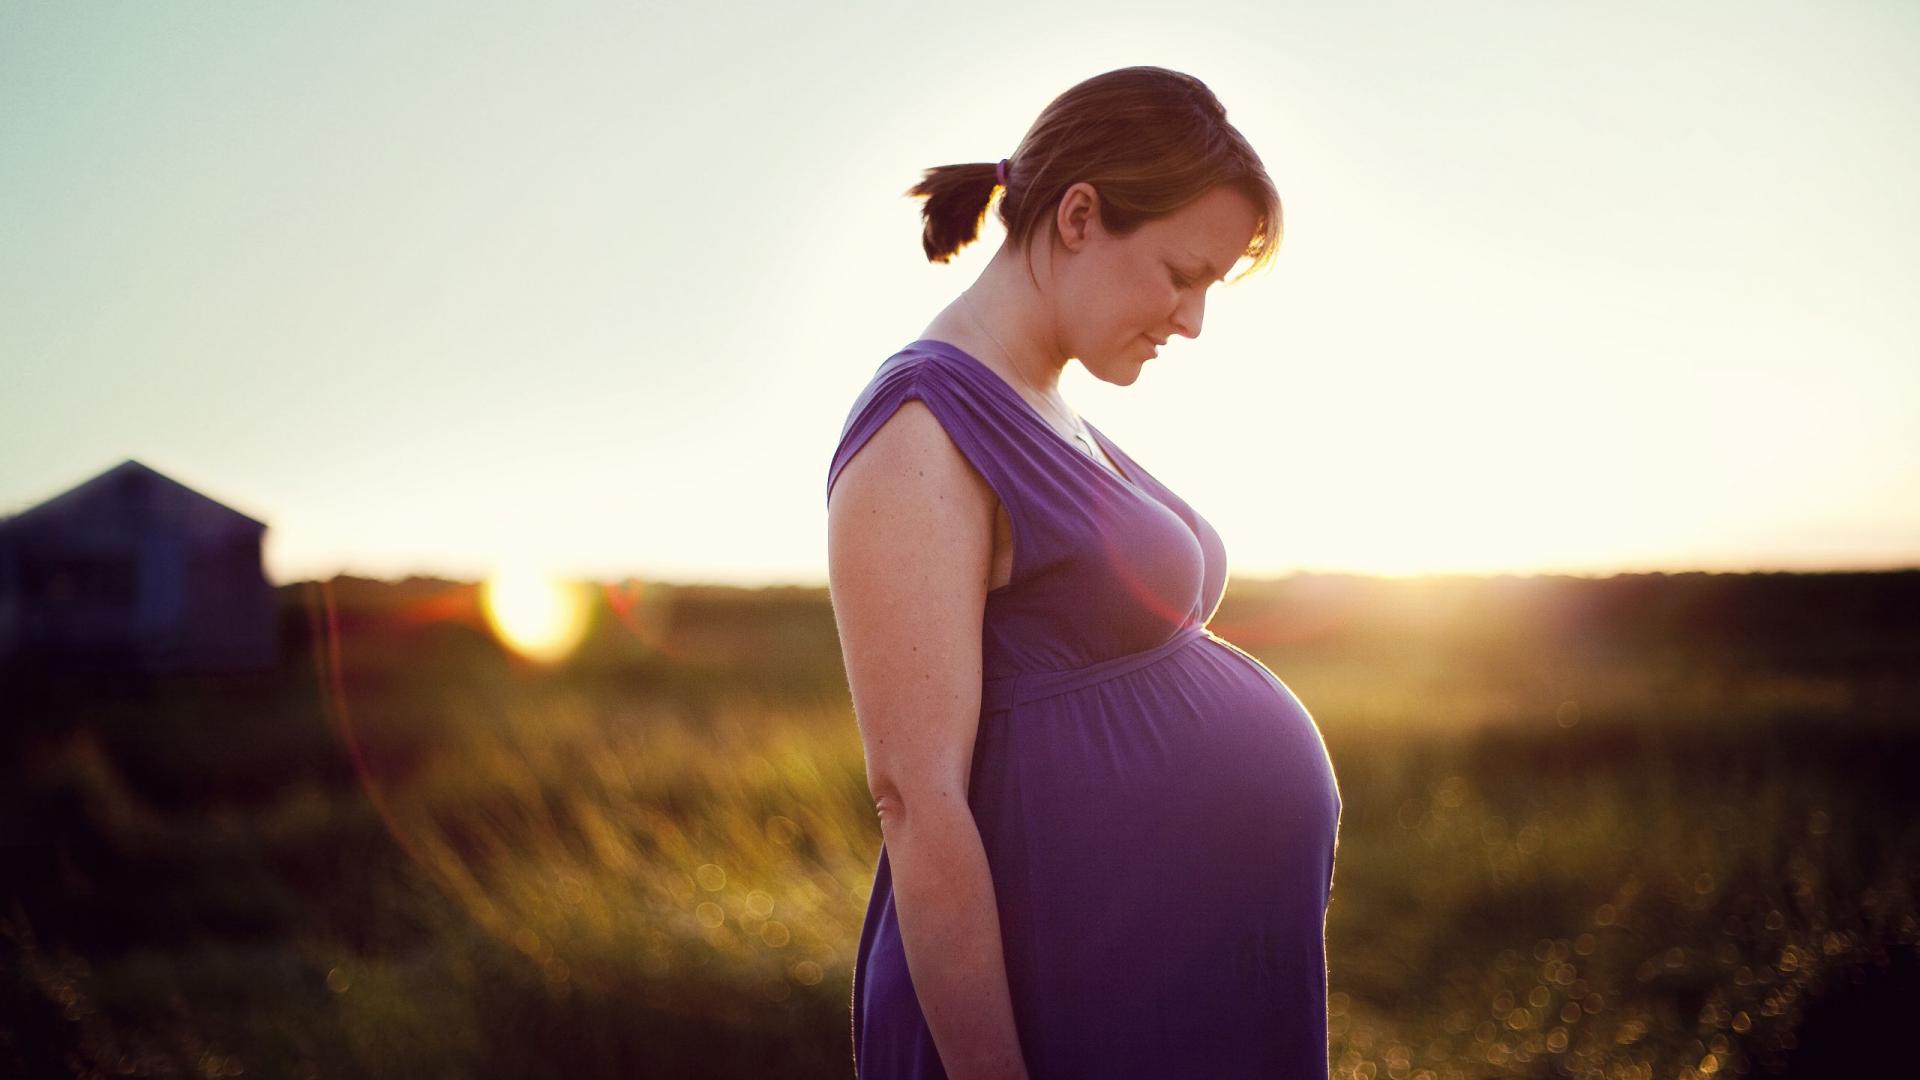 Un régime pendant la grossesse est-il sans danger ?